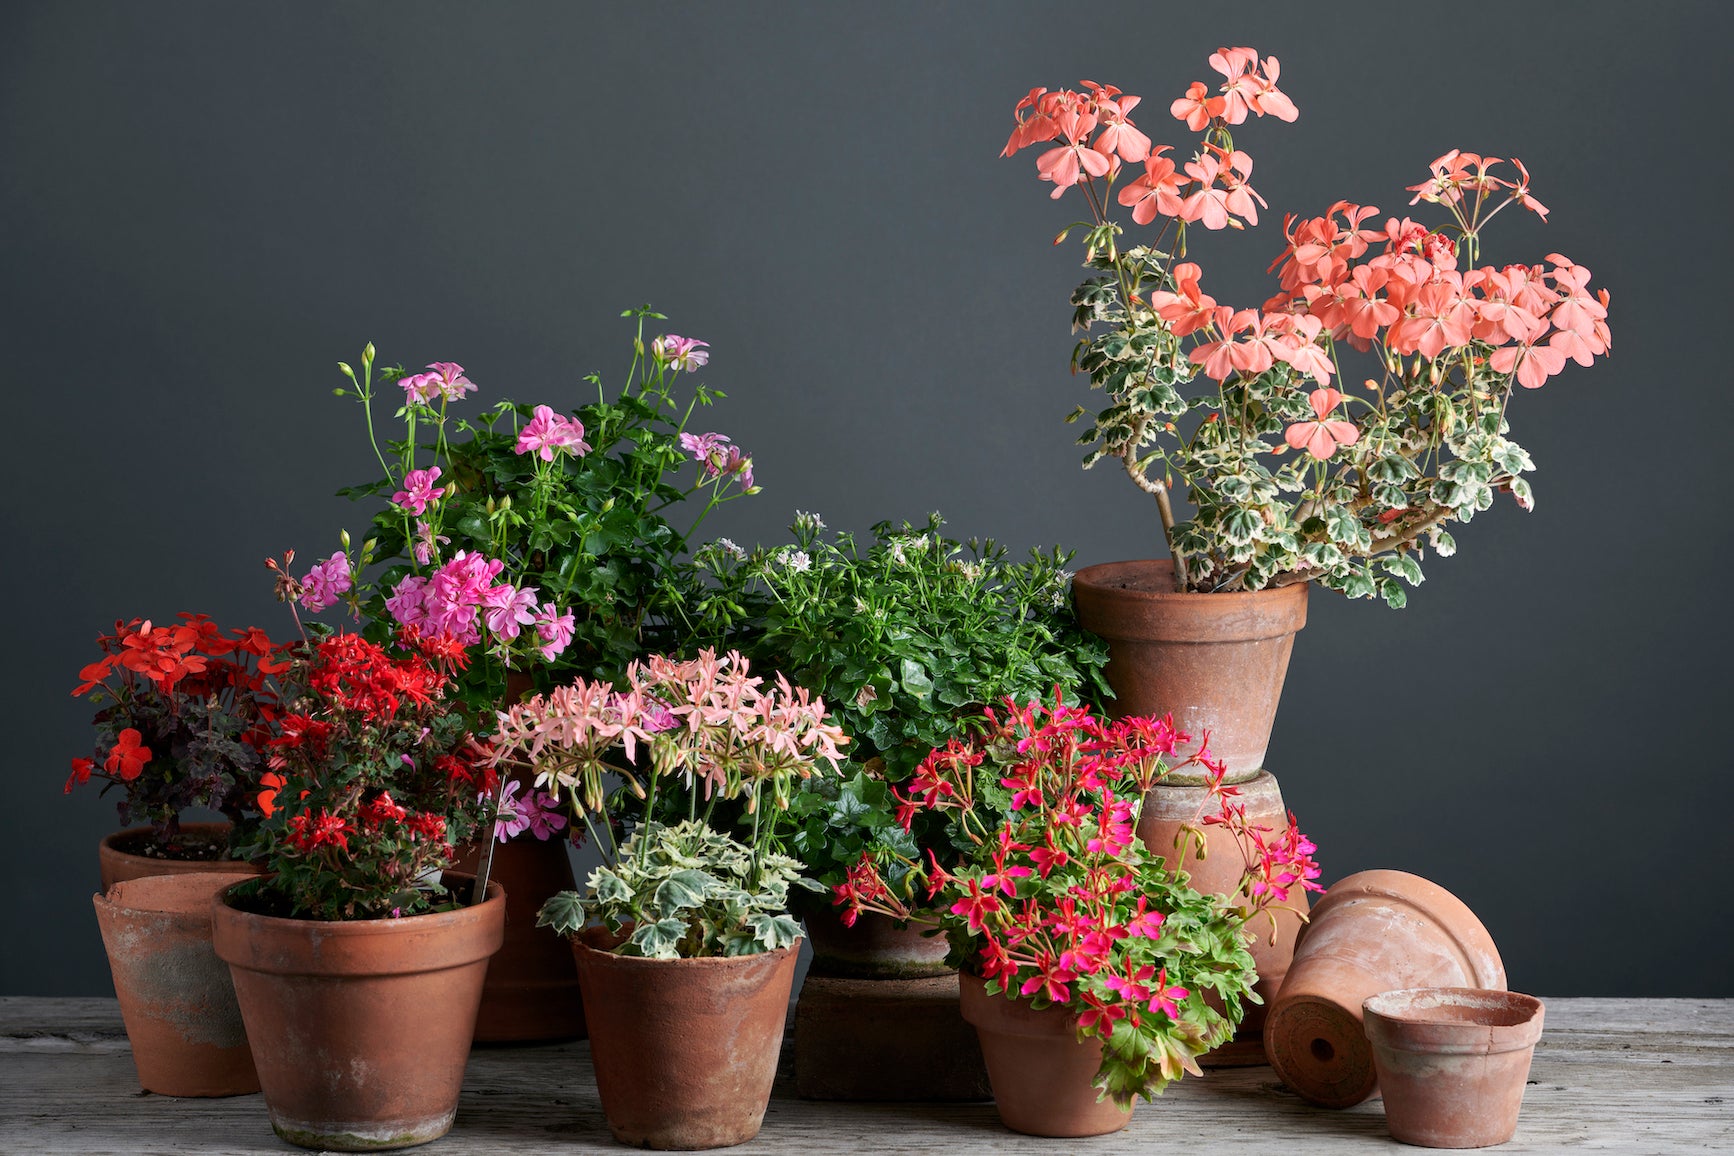 Gruppo di Pelargonium, sette specie diverse con stupendi fiori colorati, in vasi di terracotta su un luminoso tavolo di legno.